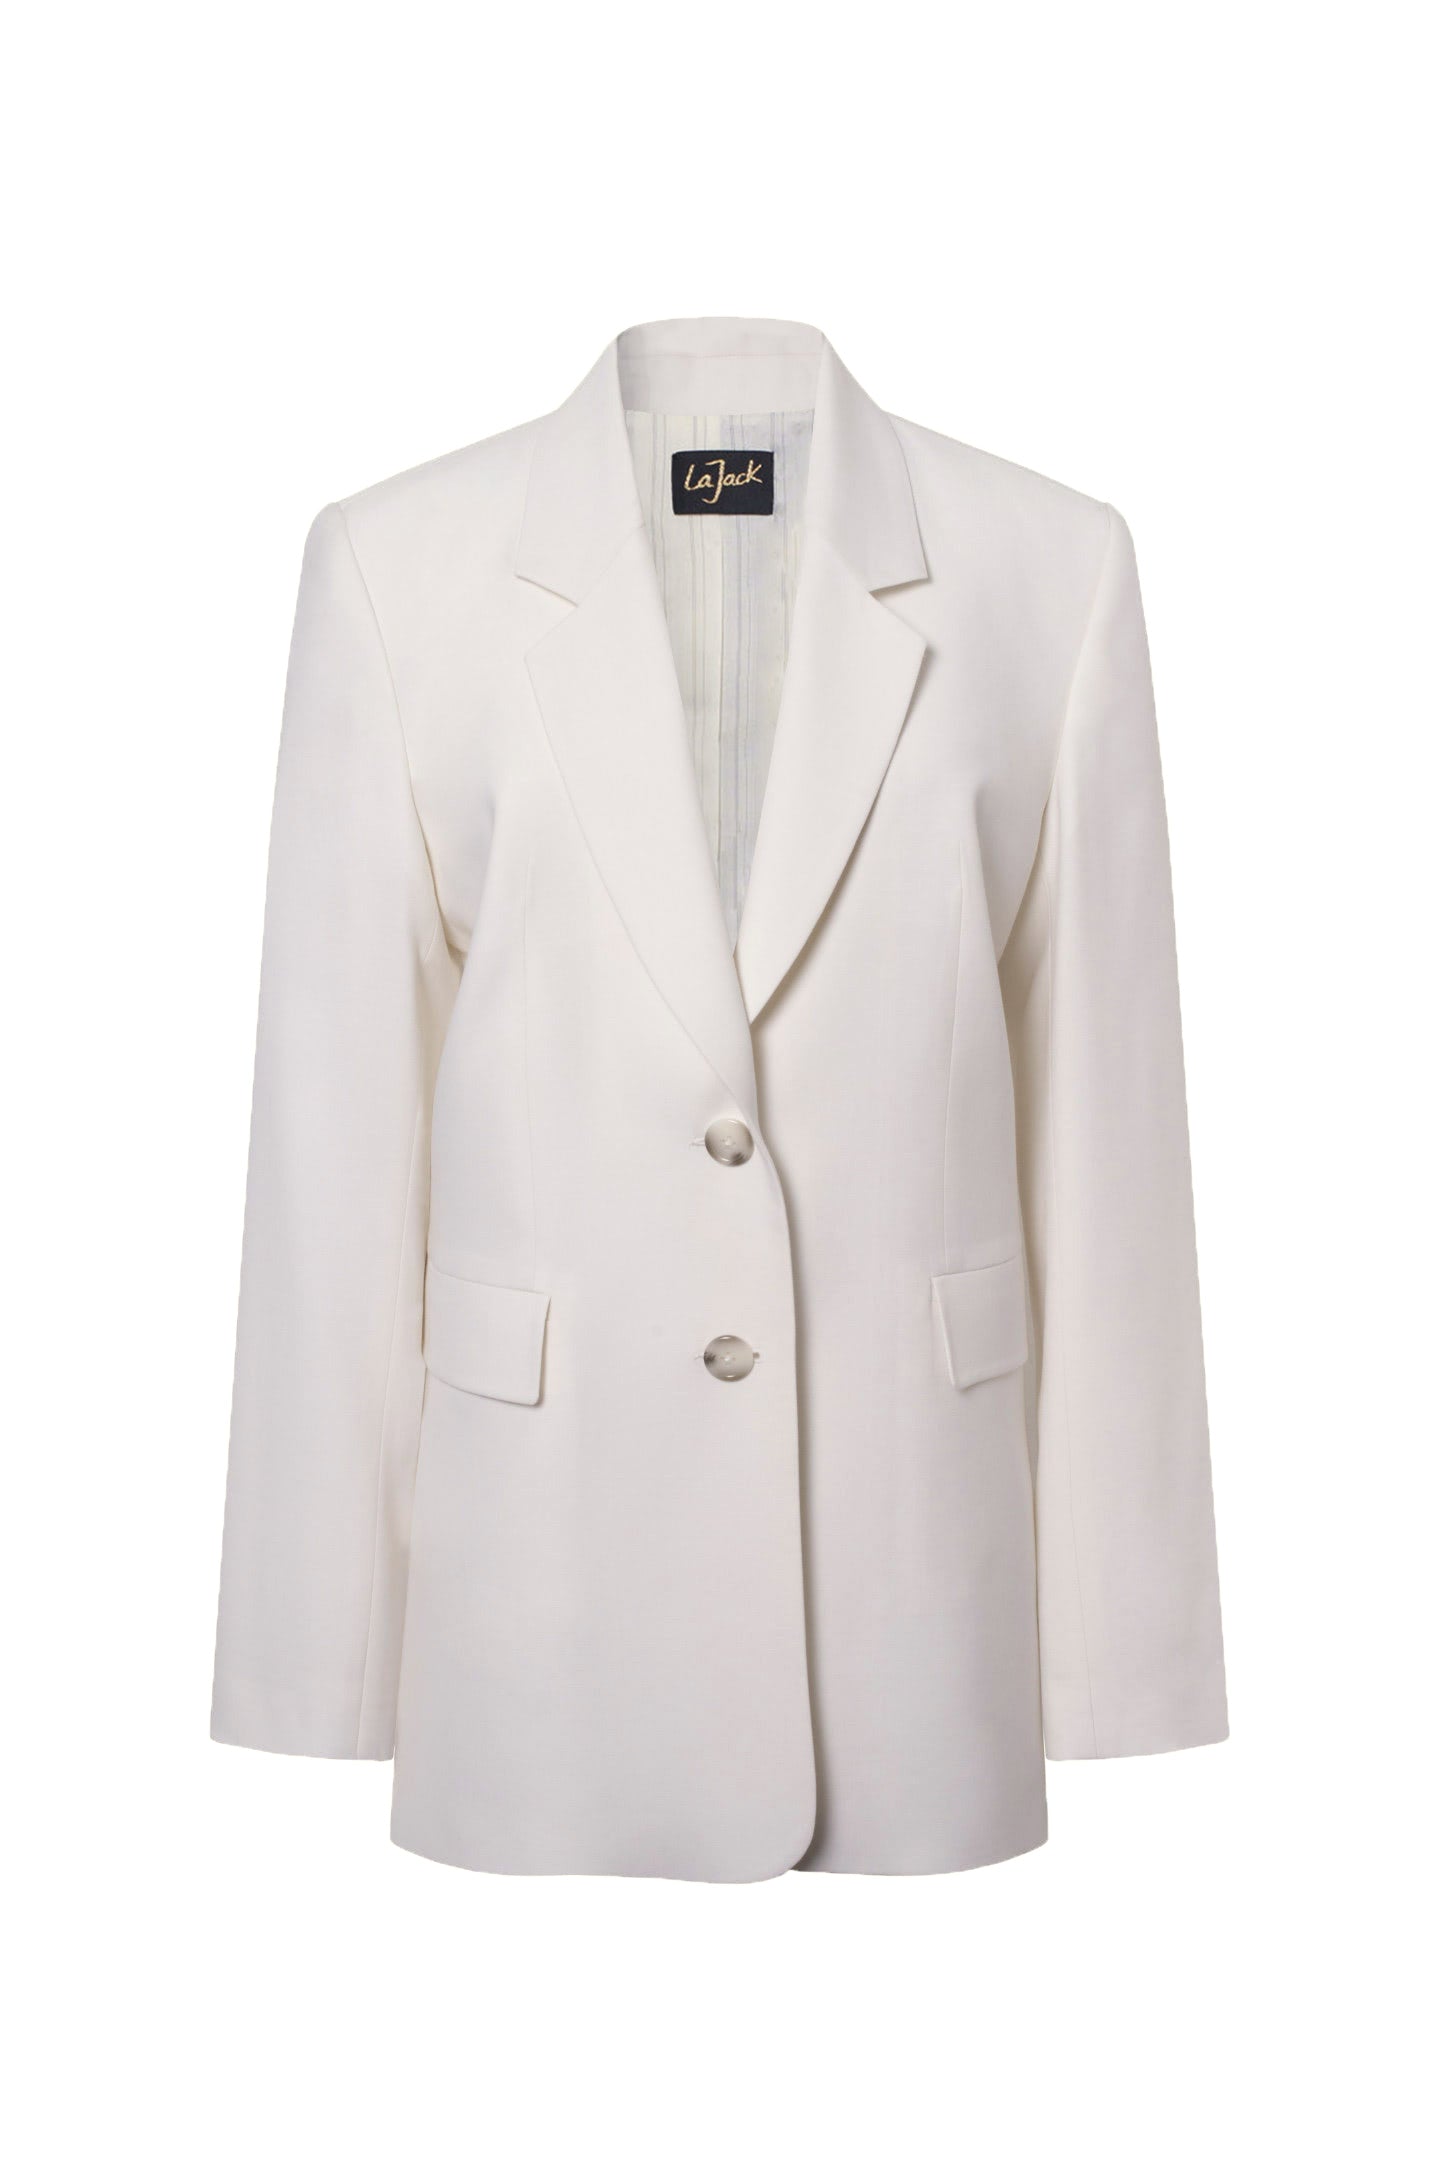 La Grace - Off White Summer Wool Oversize Blazer Jacket